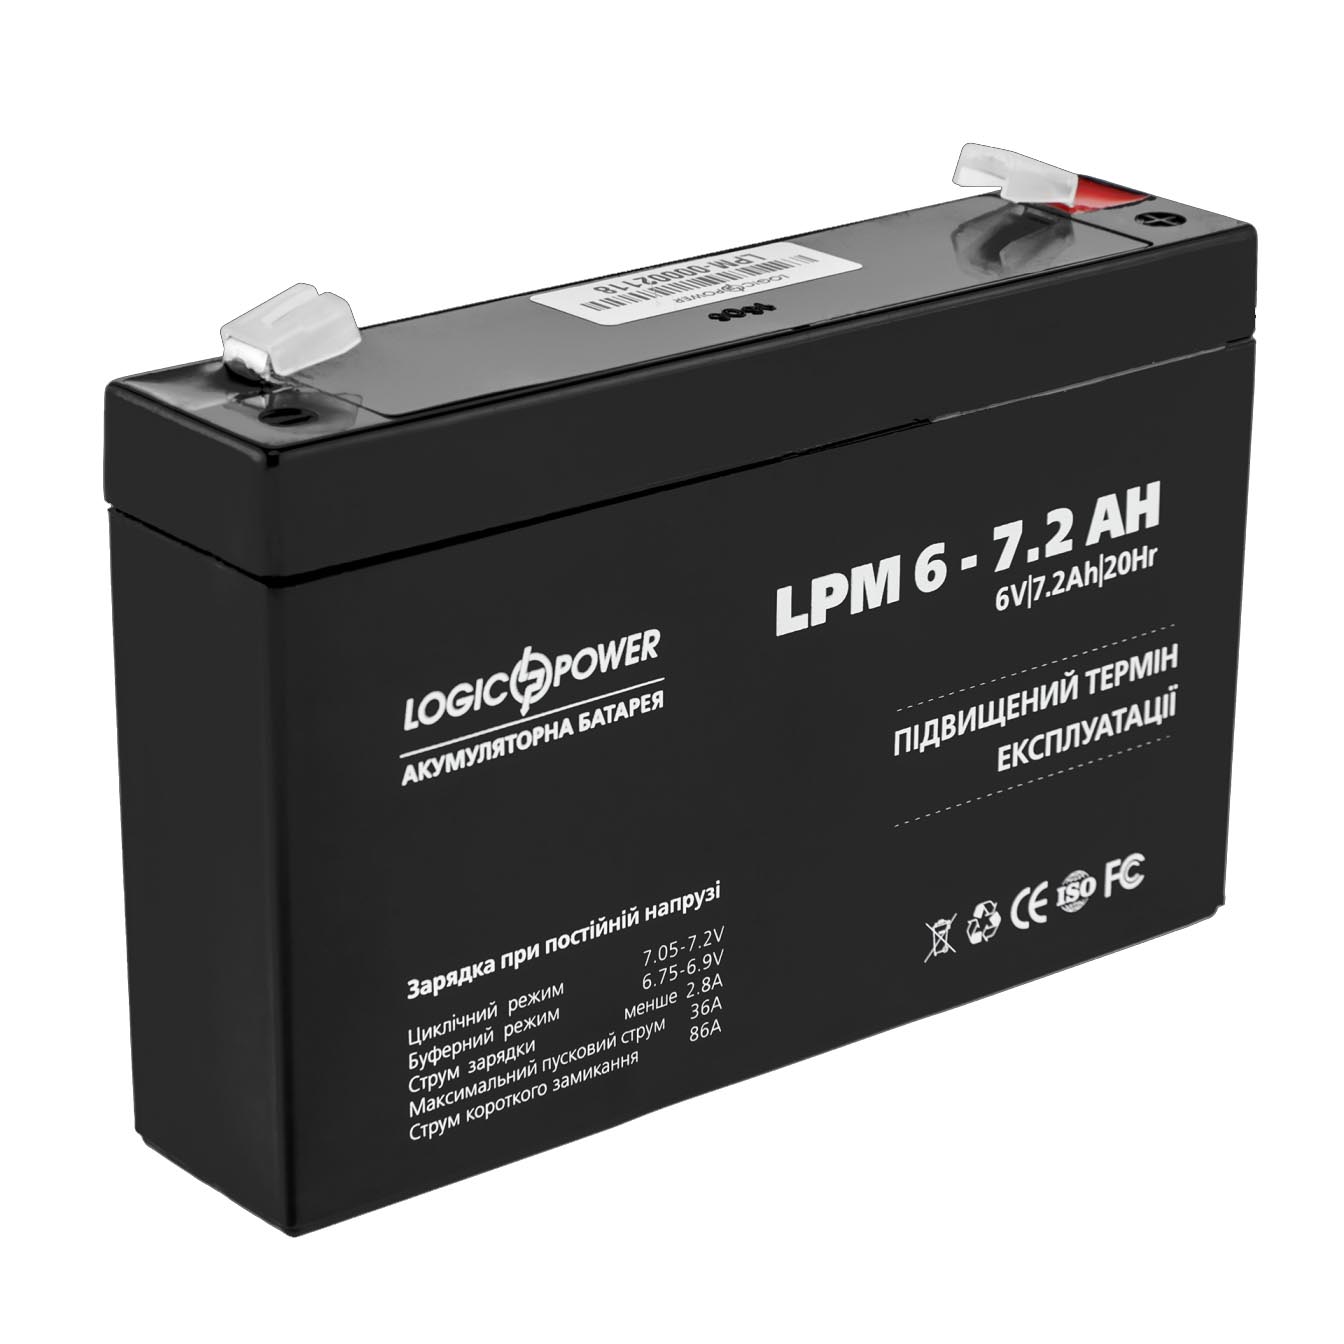 Logic Power LPM6 6V 7.2 AH 151*34*94 (56310512)